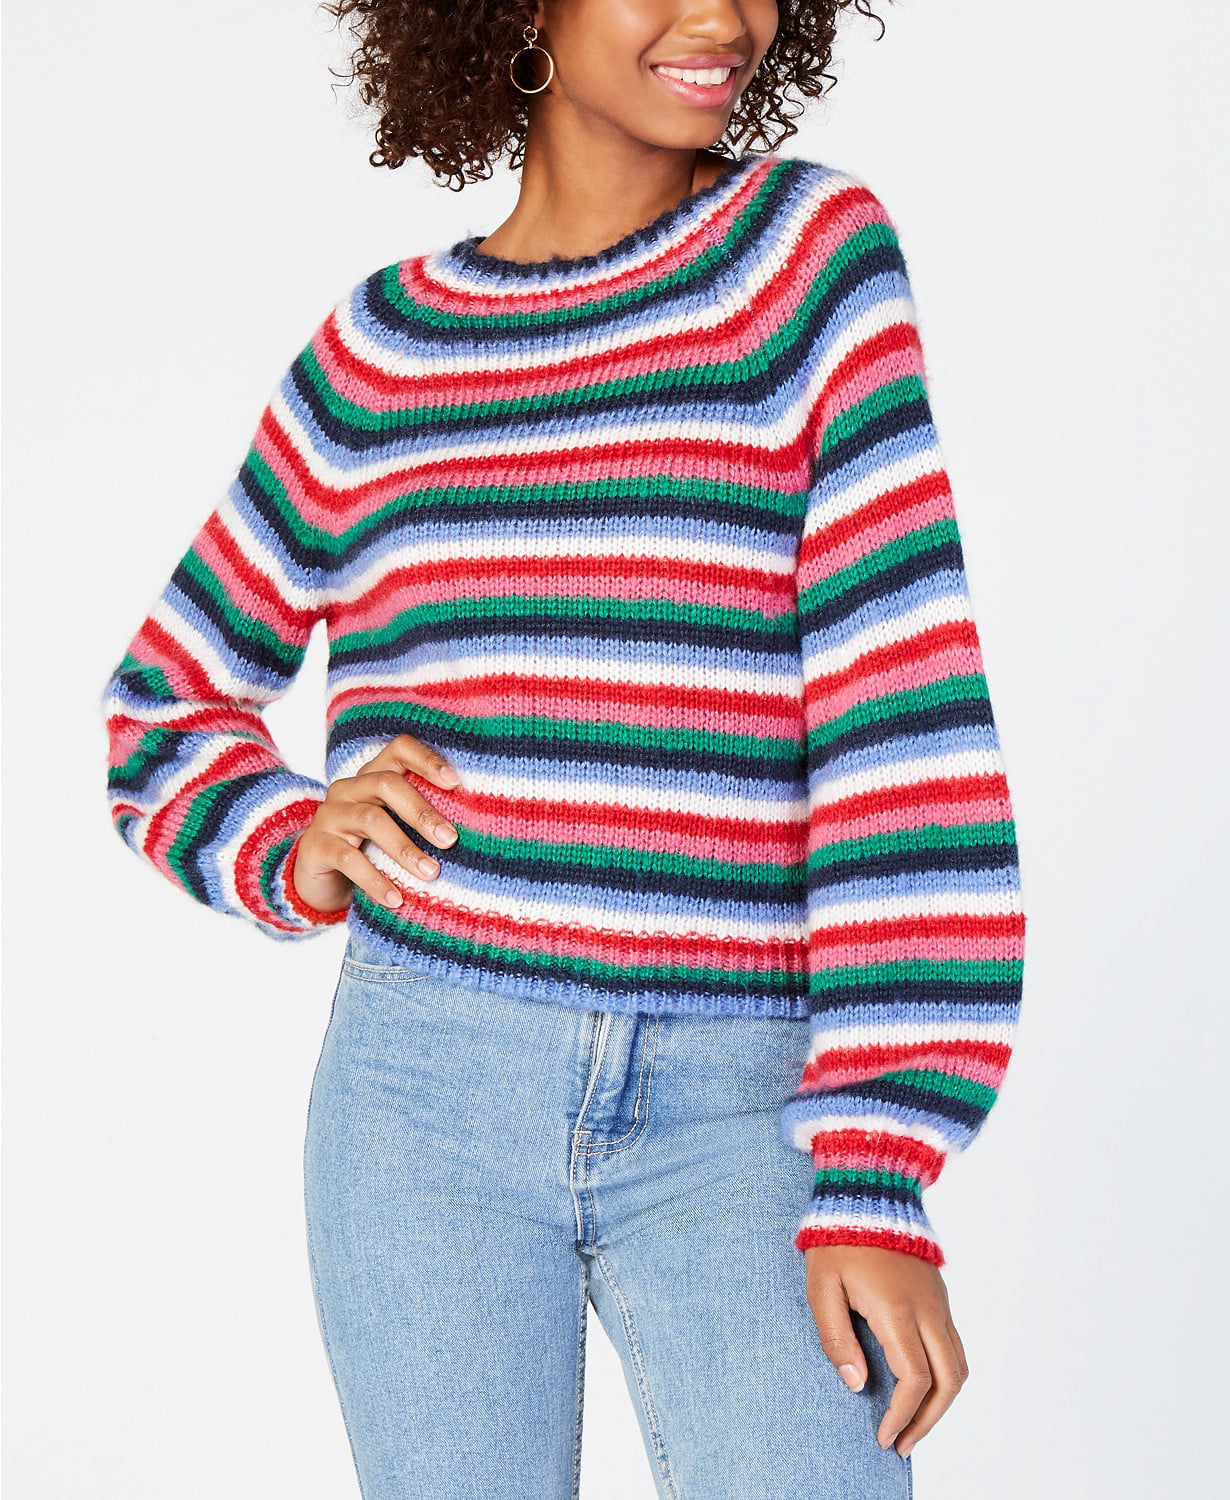 Crave Fame - Fluffy Striped Sweater - Juniors - XL - Walmart.com